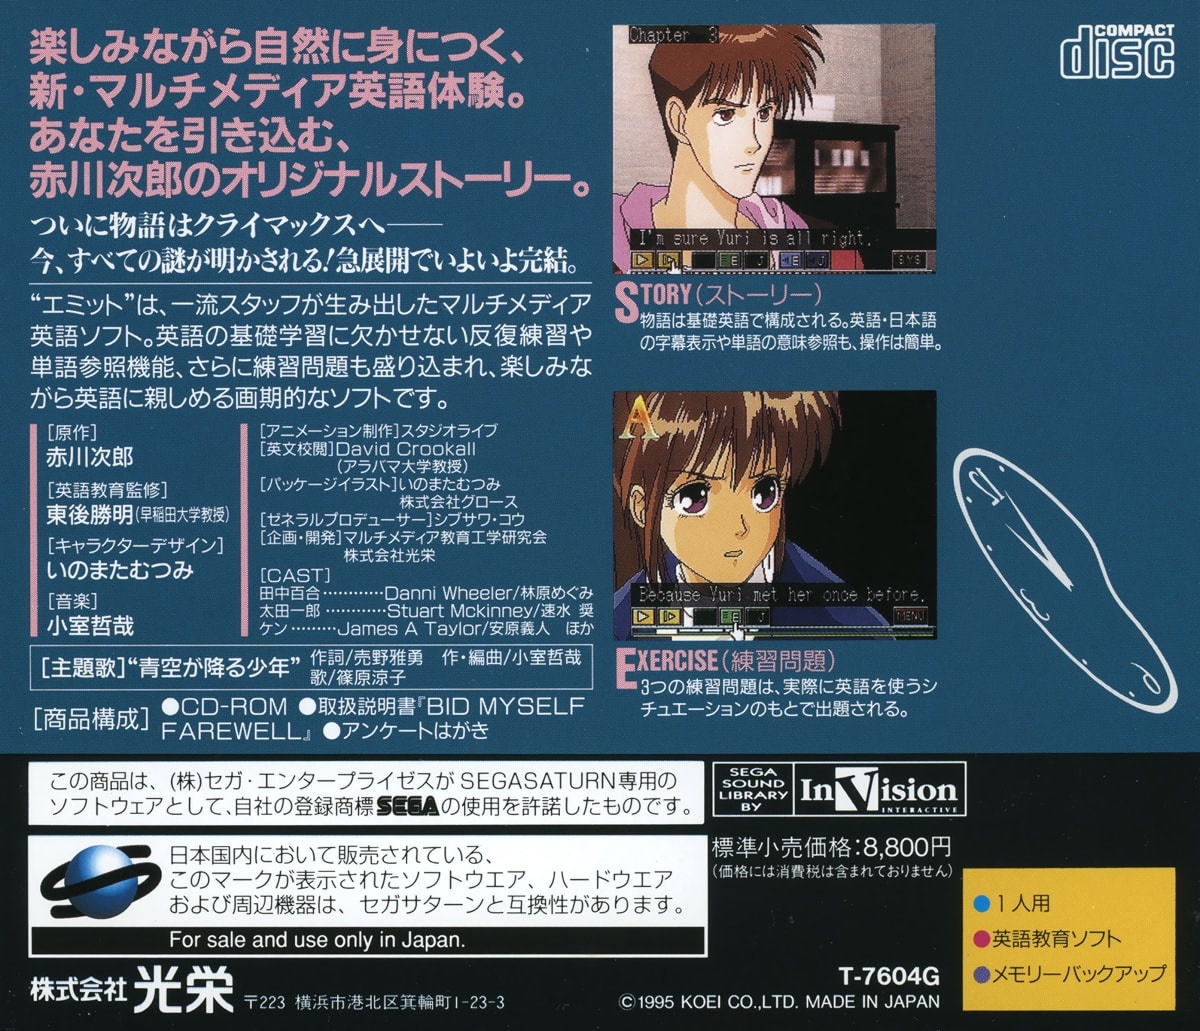 Capa do jogo EMIT Vol. 3: Watashi ni Sayonara o